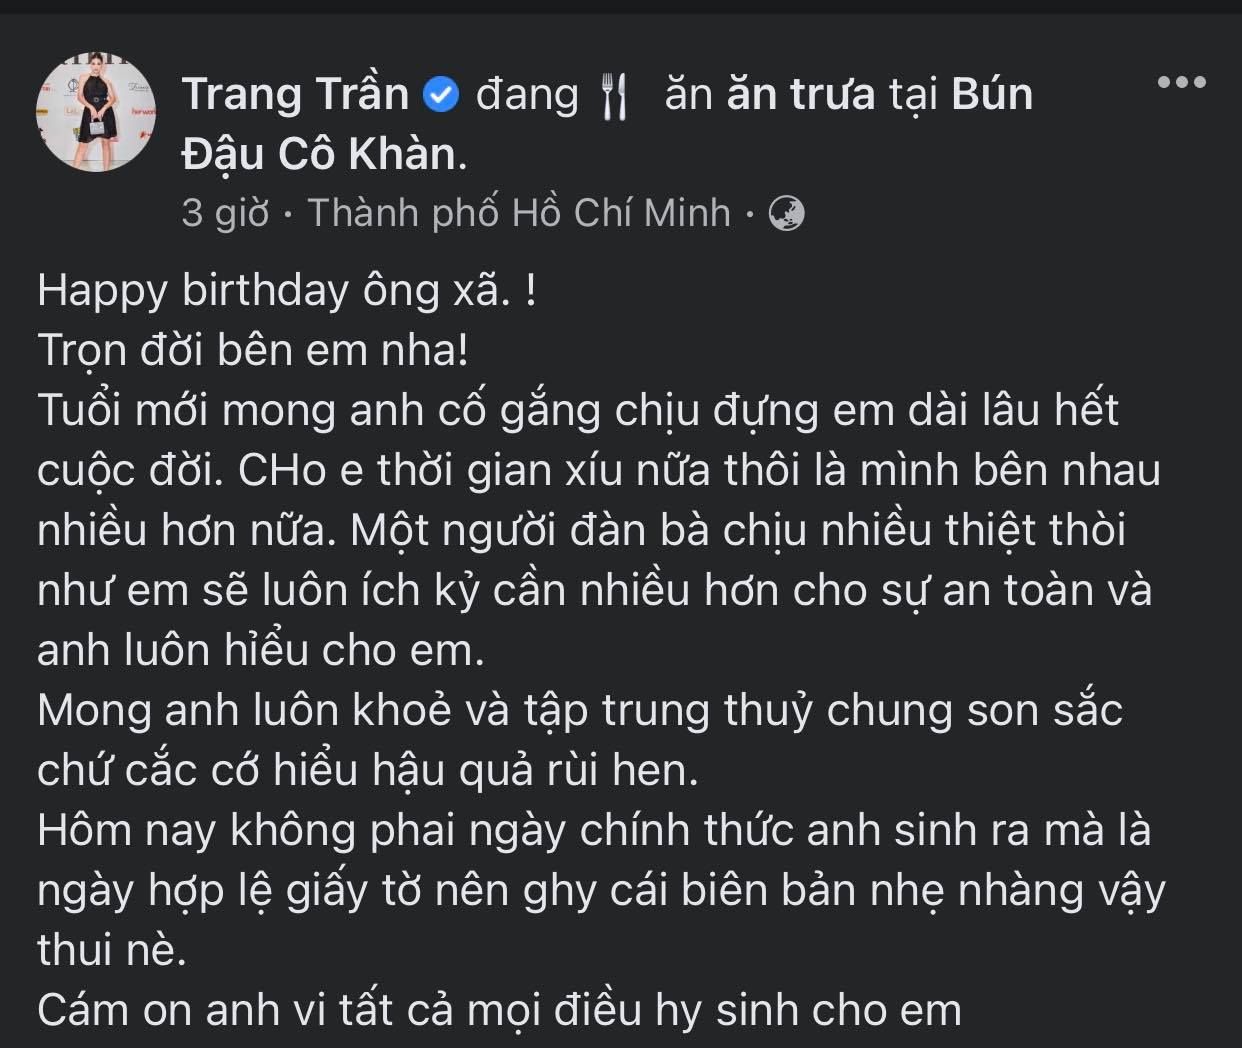 Trang-tran-gui-loi-chuc-mung-sinh-nhat-cuc-ngot-debn-ong-xa-tron-doi-ben-em-nha